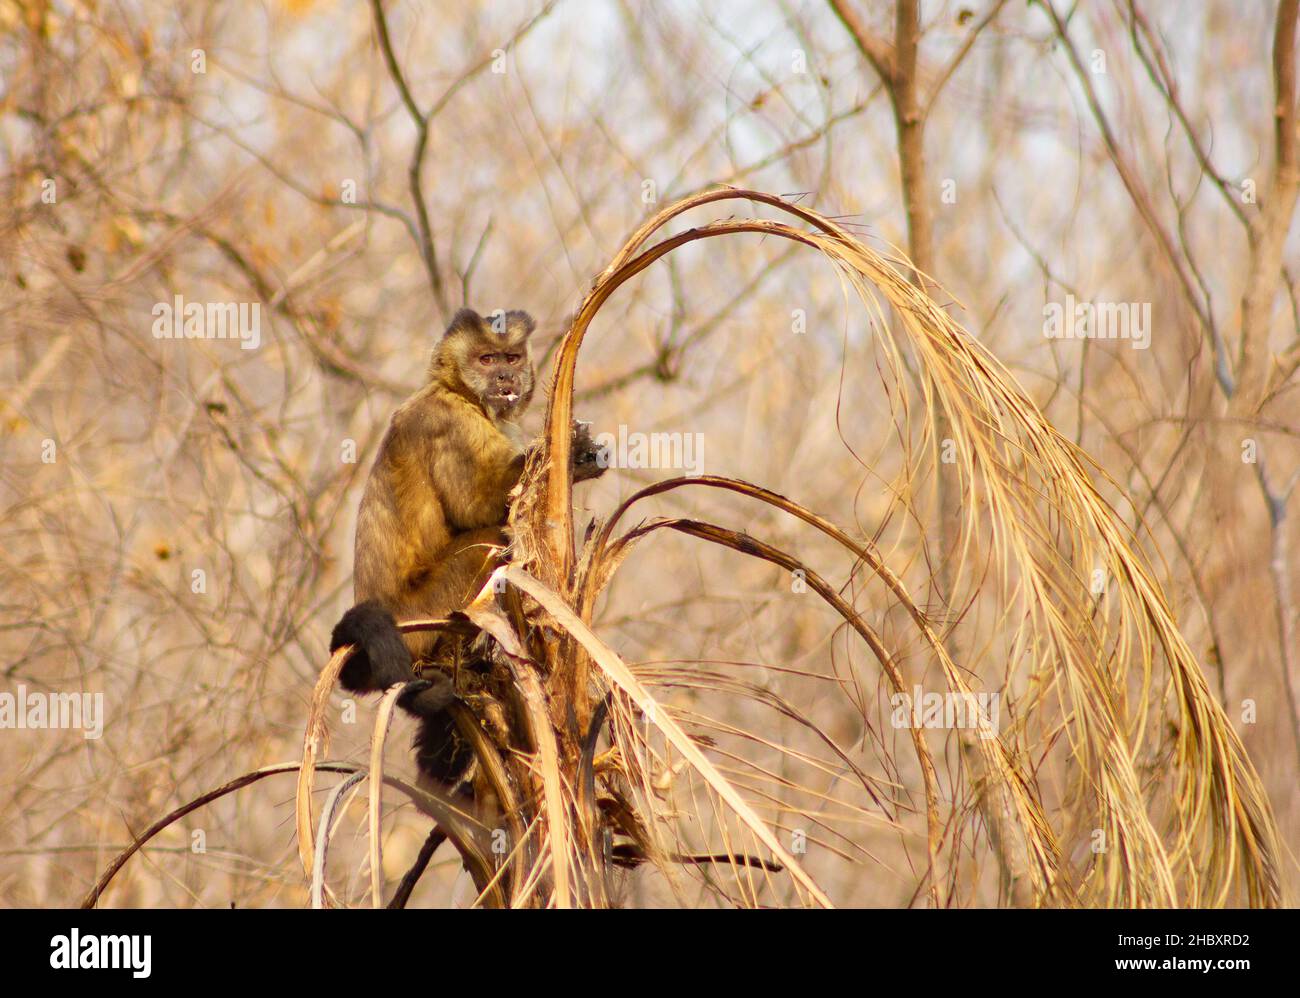 Macaco prego se alimentando de palmito pós-chamas no Pantanal. Stockfoto